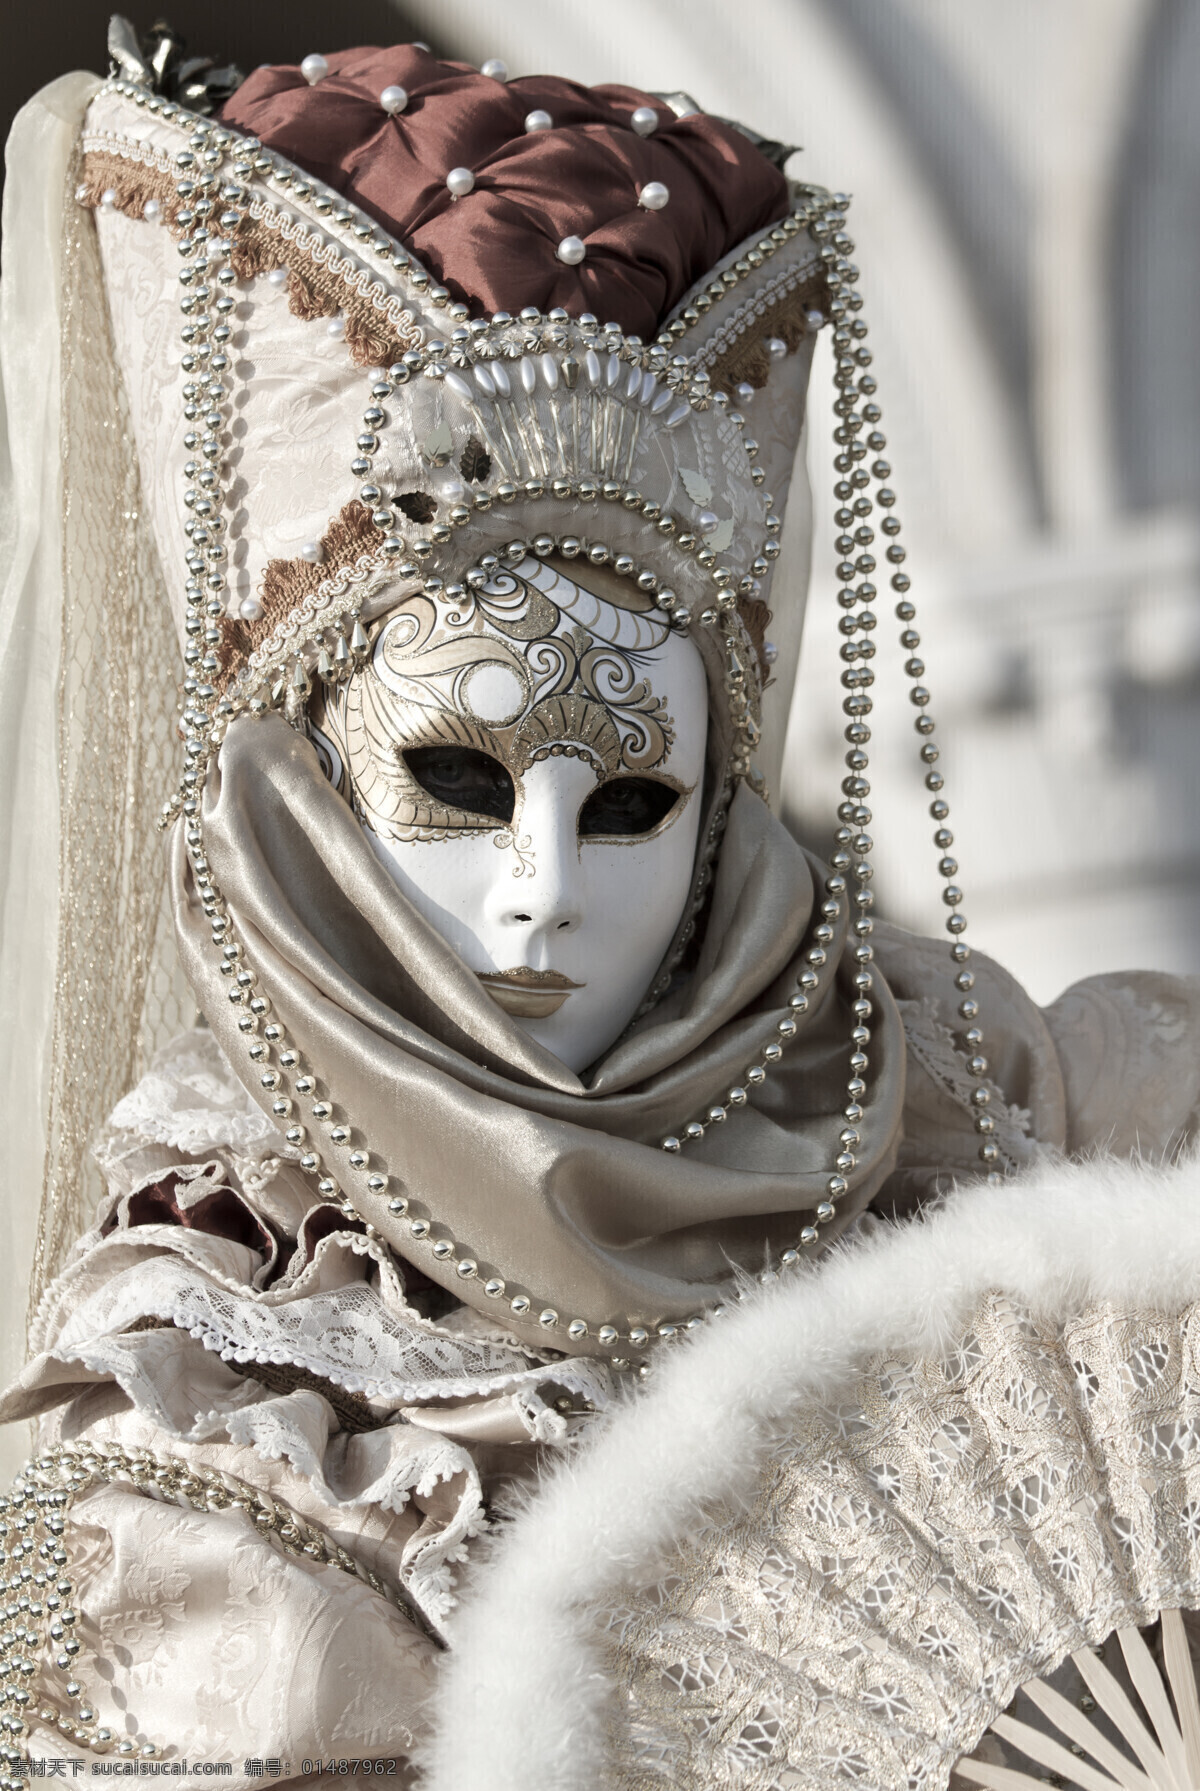 威尼斯 人 面具 传统文化 习俗 美女图片 人物图片